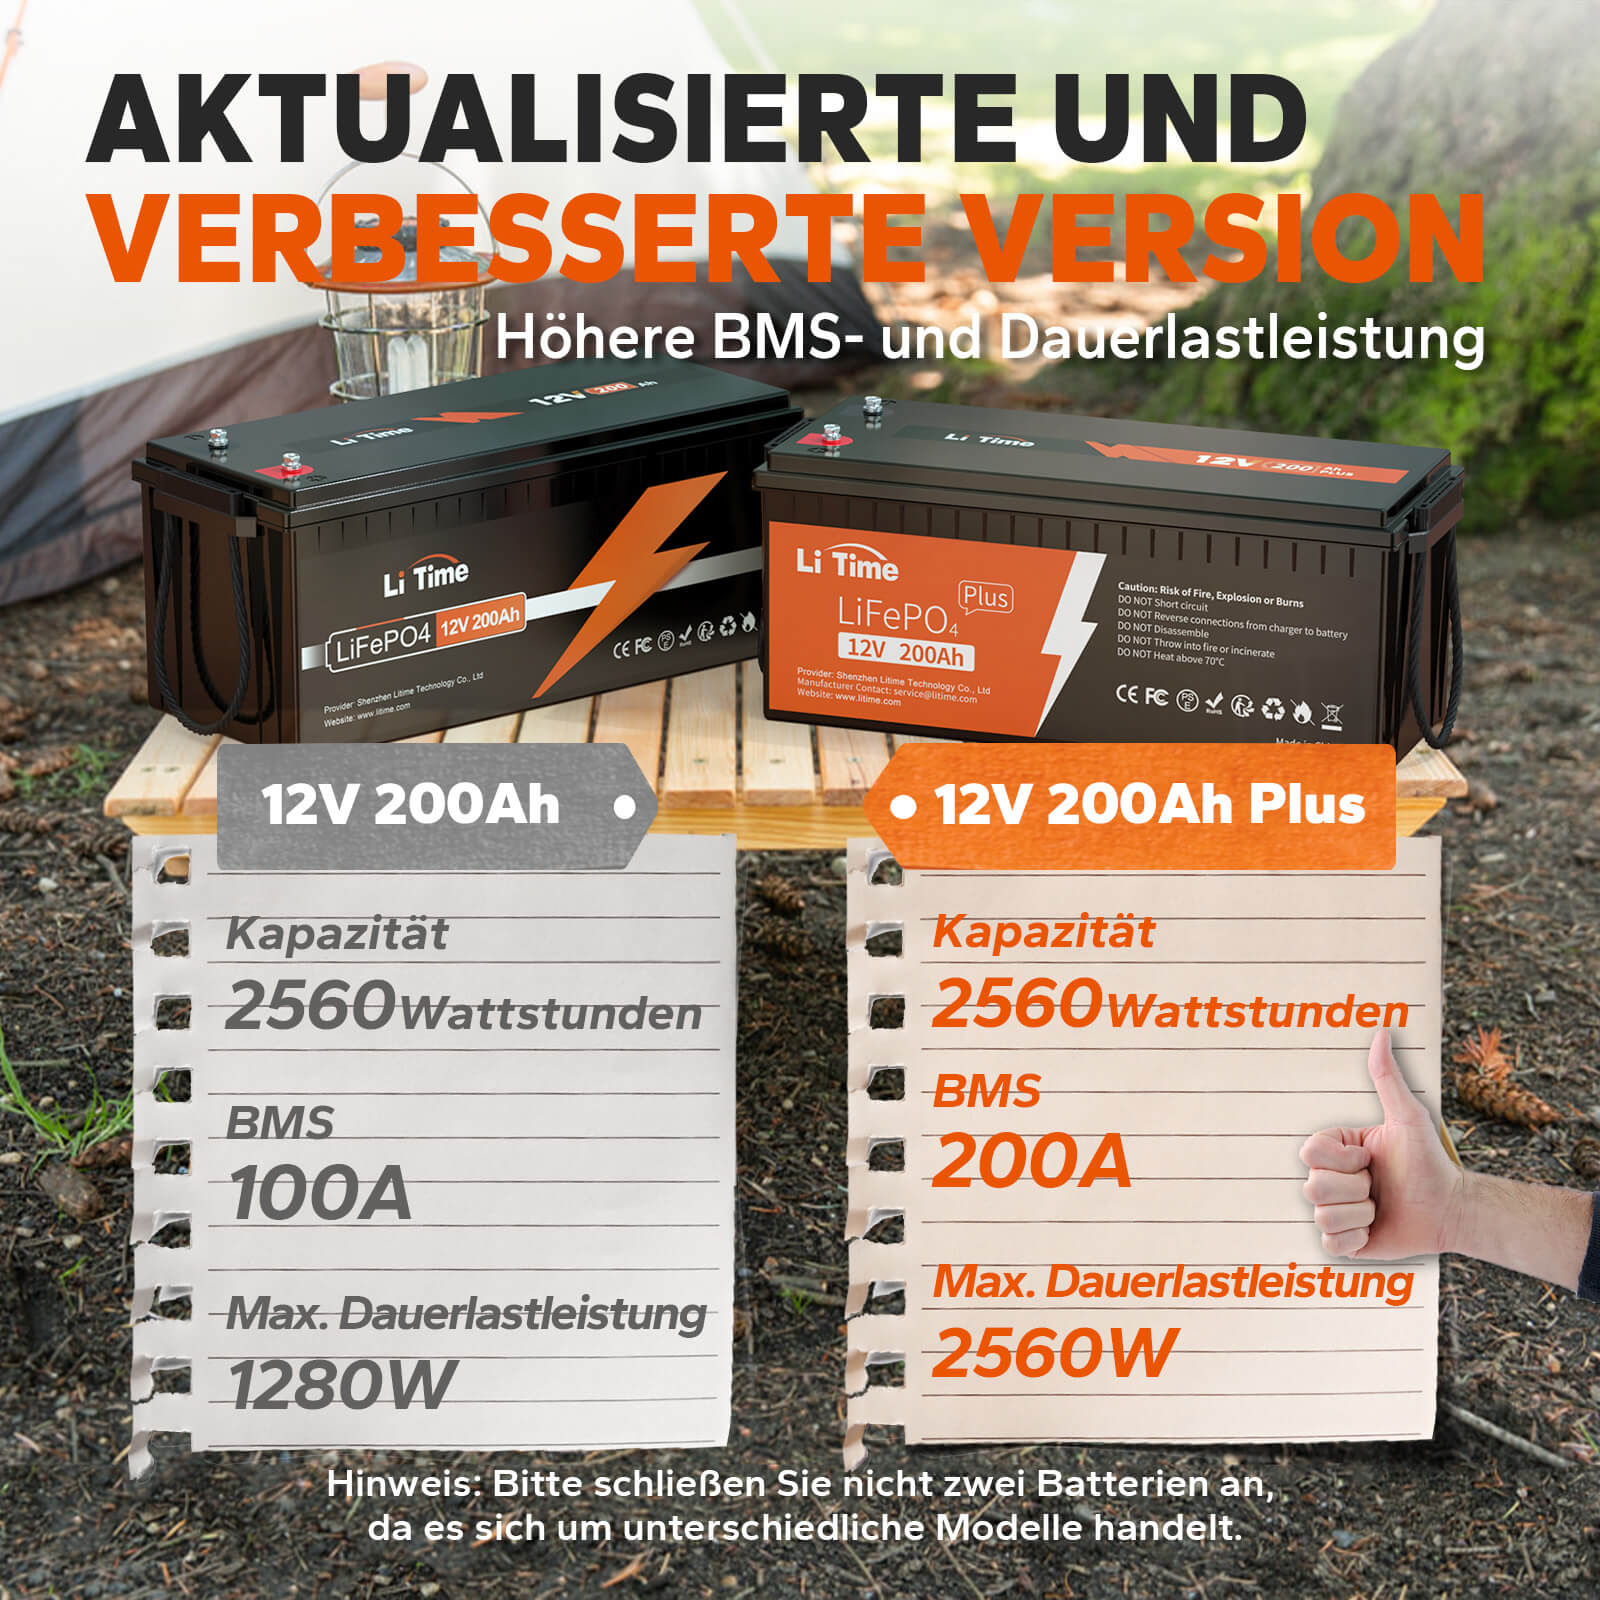 【0% IVA】Batteria LiTime 12V 200Ah Plus Lithium LiFePO4 (SOLO per edifici residenziali e SOLO in DEU - Solo per clienti in Germania)